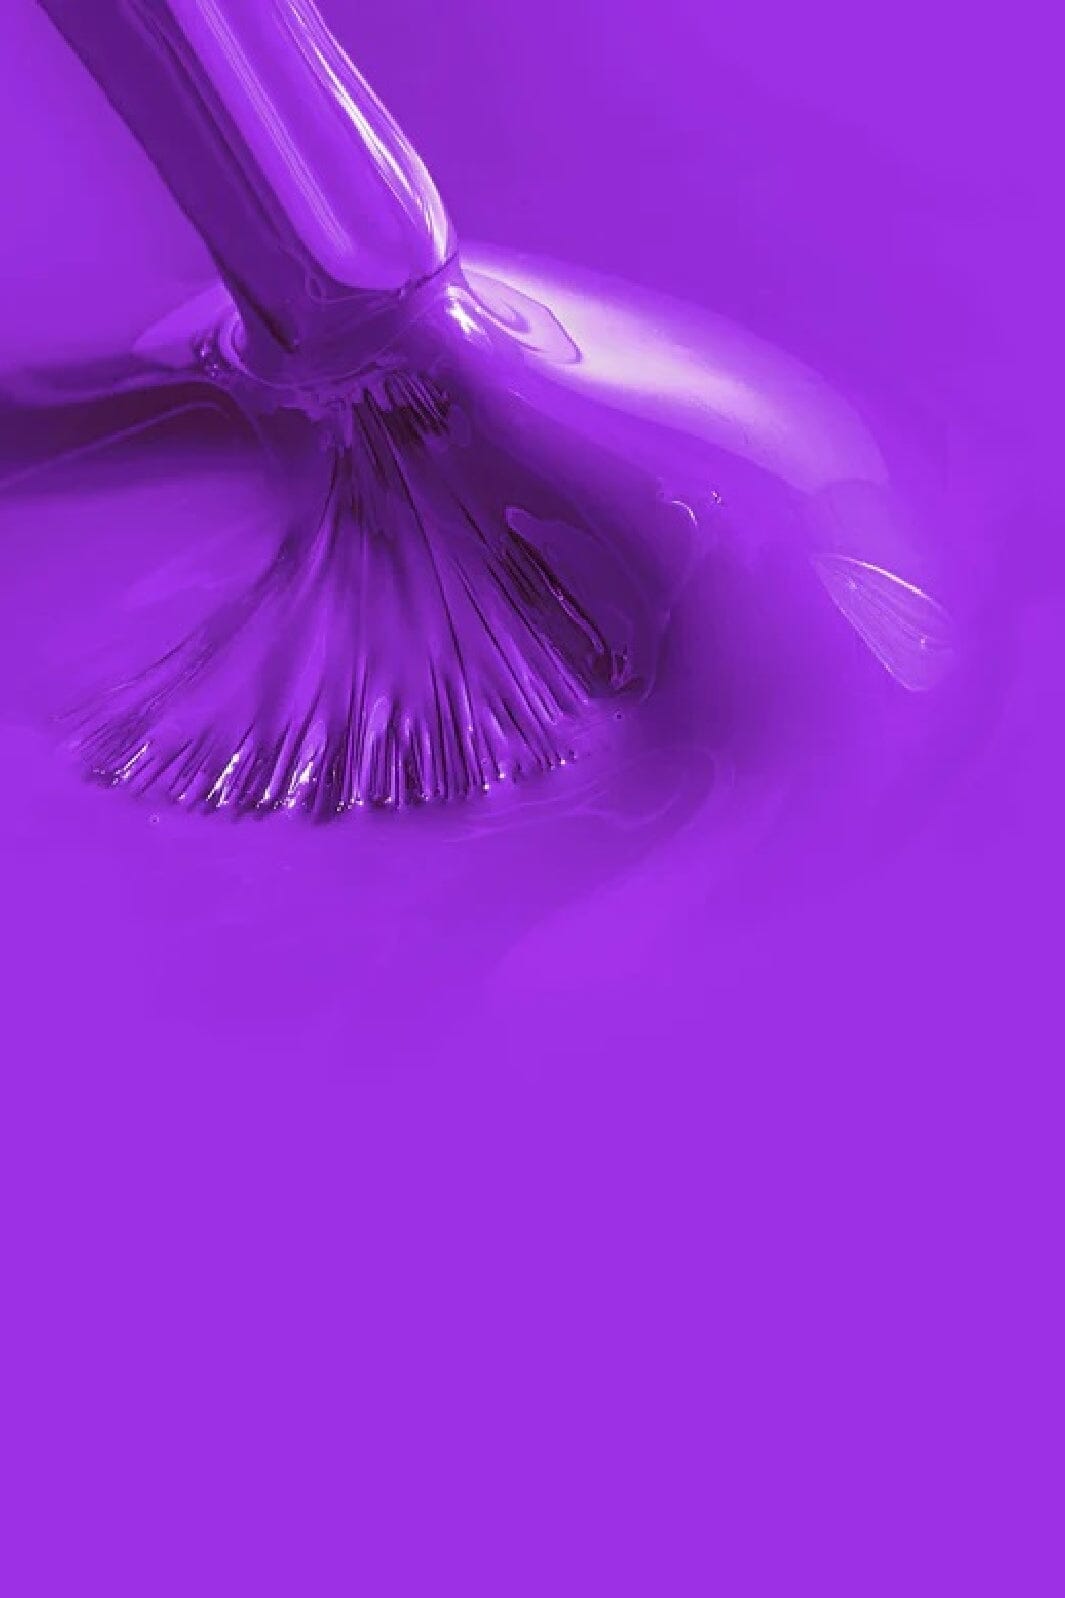 Le Mini Macaron - Neglelak Gel - Ultra Violet Neglelak 